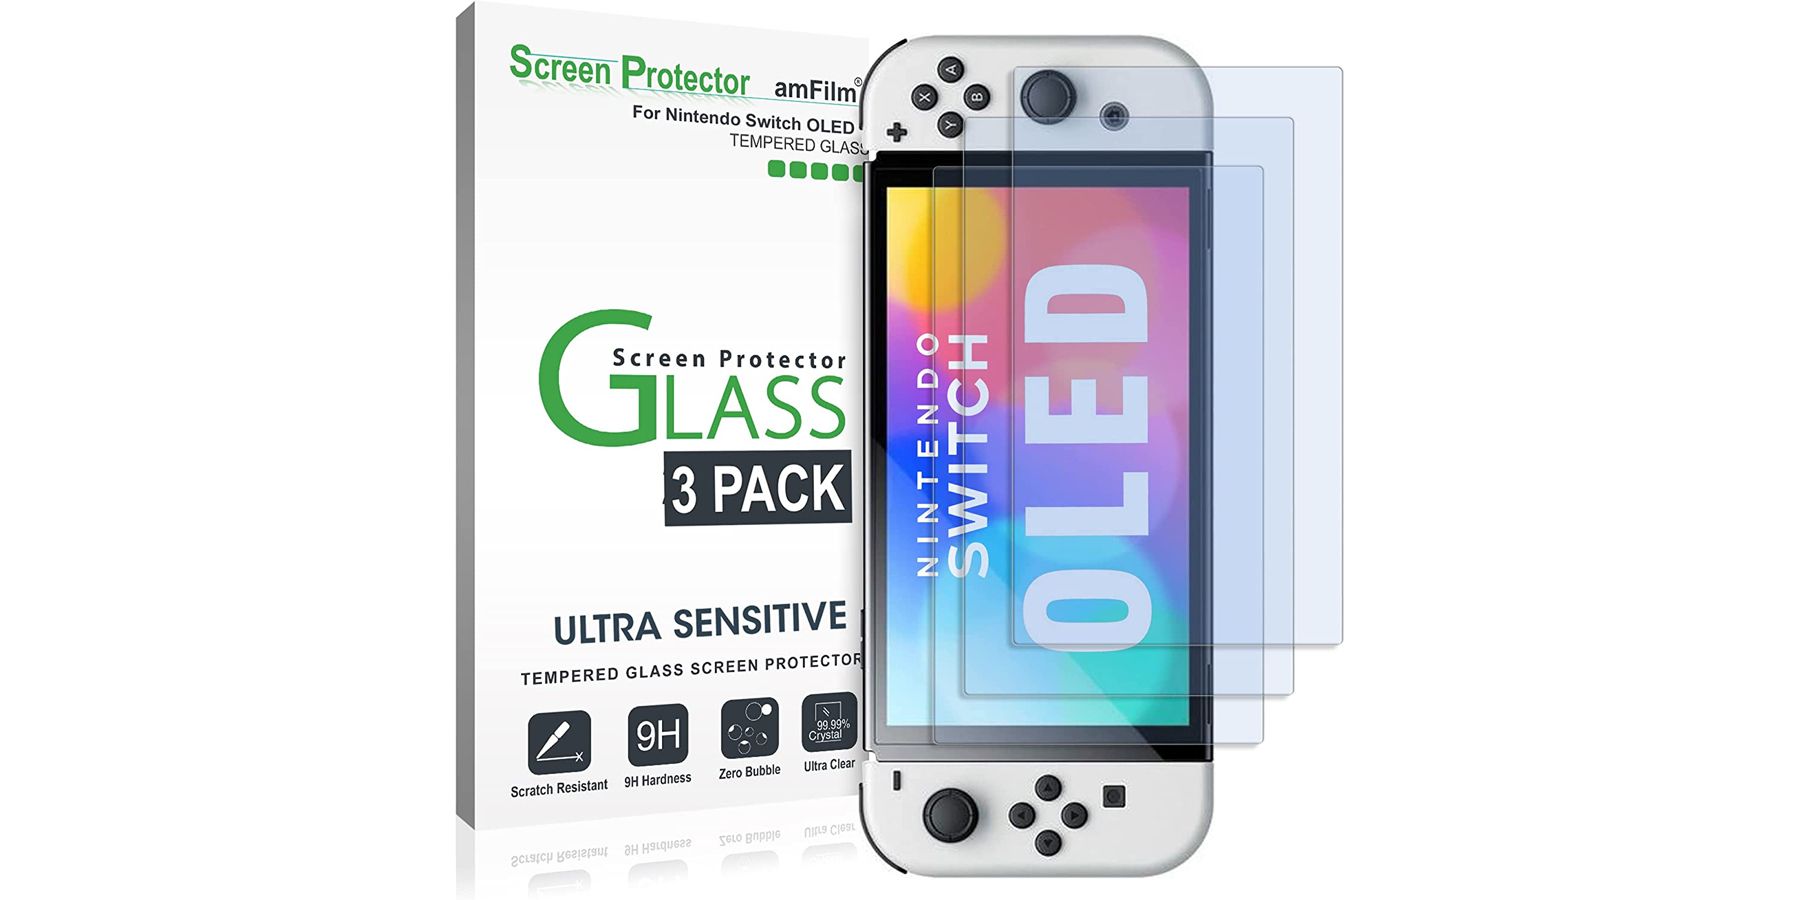 Защитная пленка для экрана из закаленного стекла amFilm, совместимая с Nintendo Switch OLED, модель 2021 г.